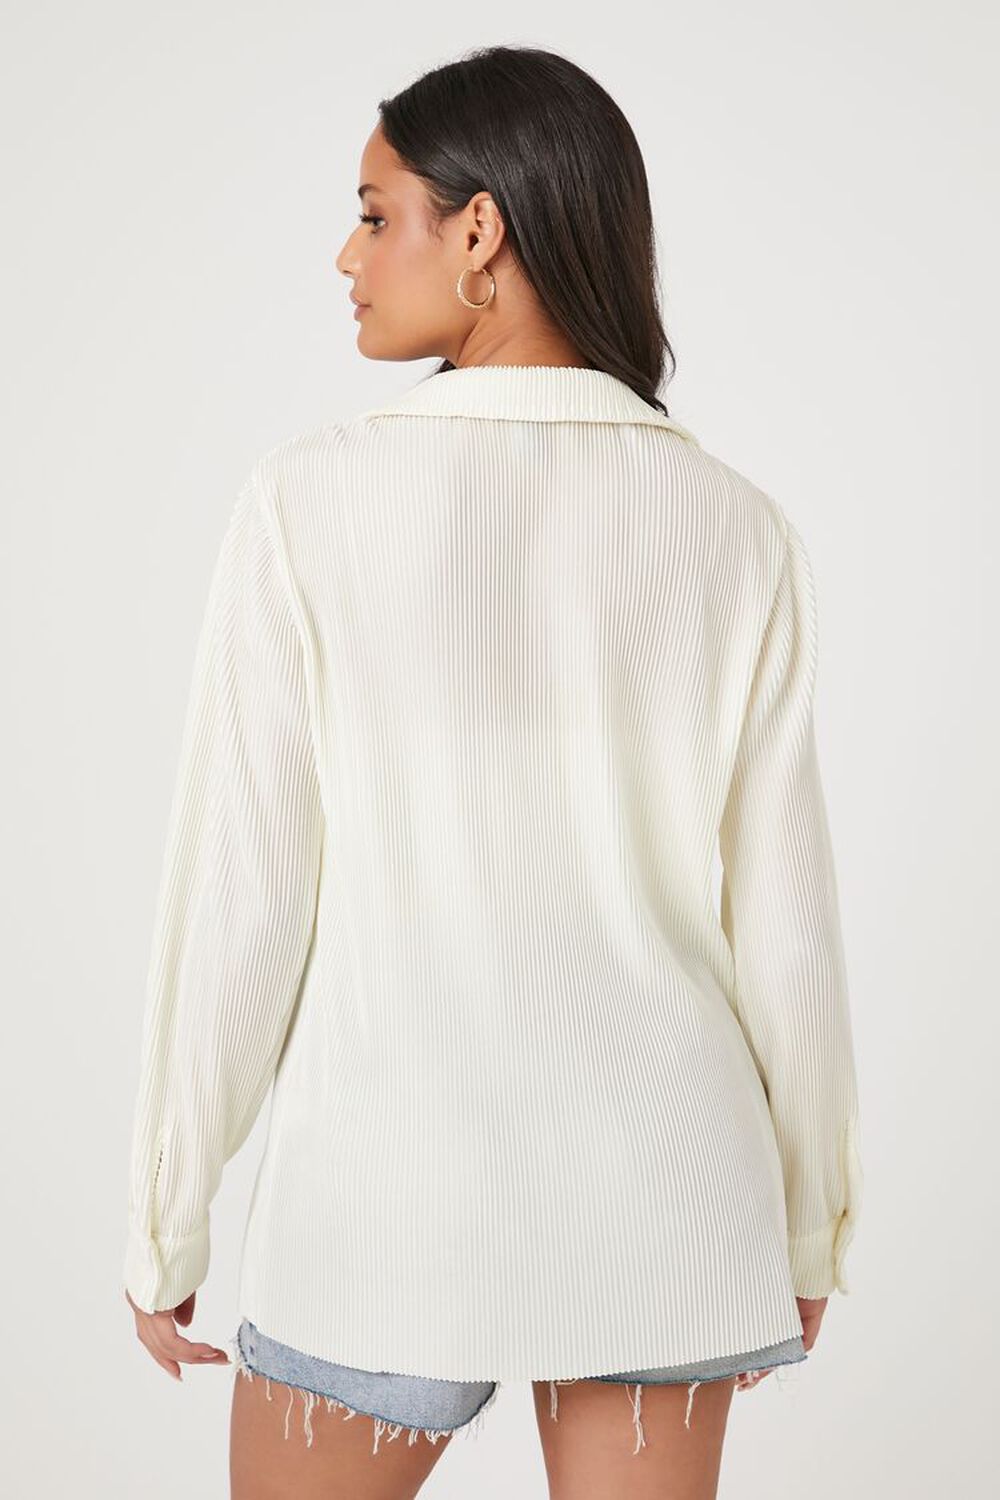 VANILLA Plisse Long-Sleeve Shirt, image 3